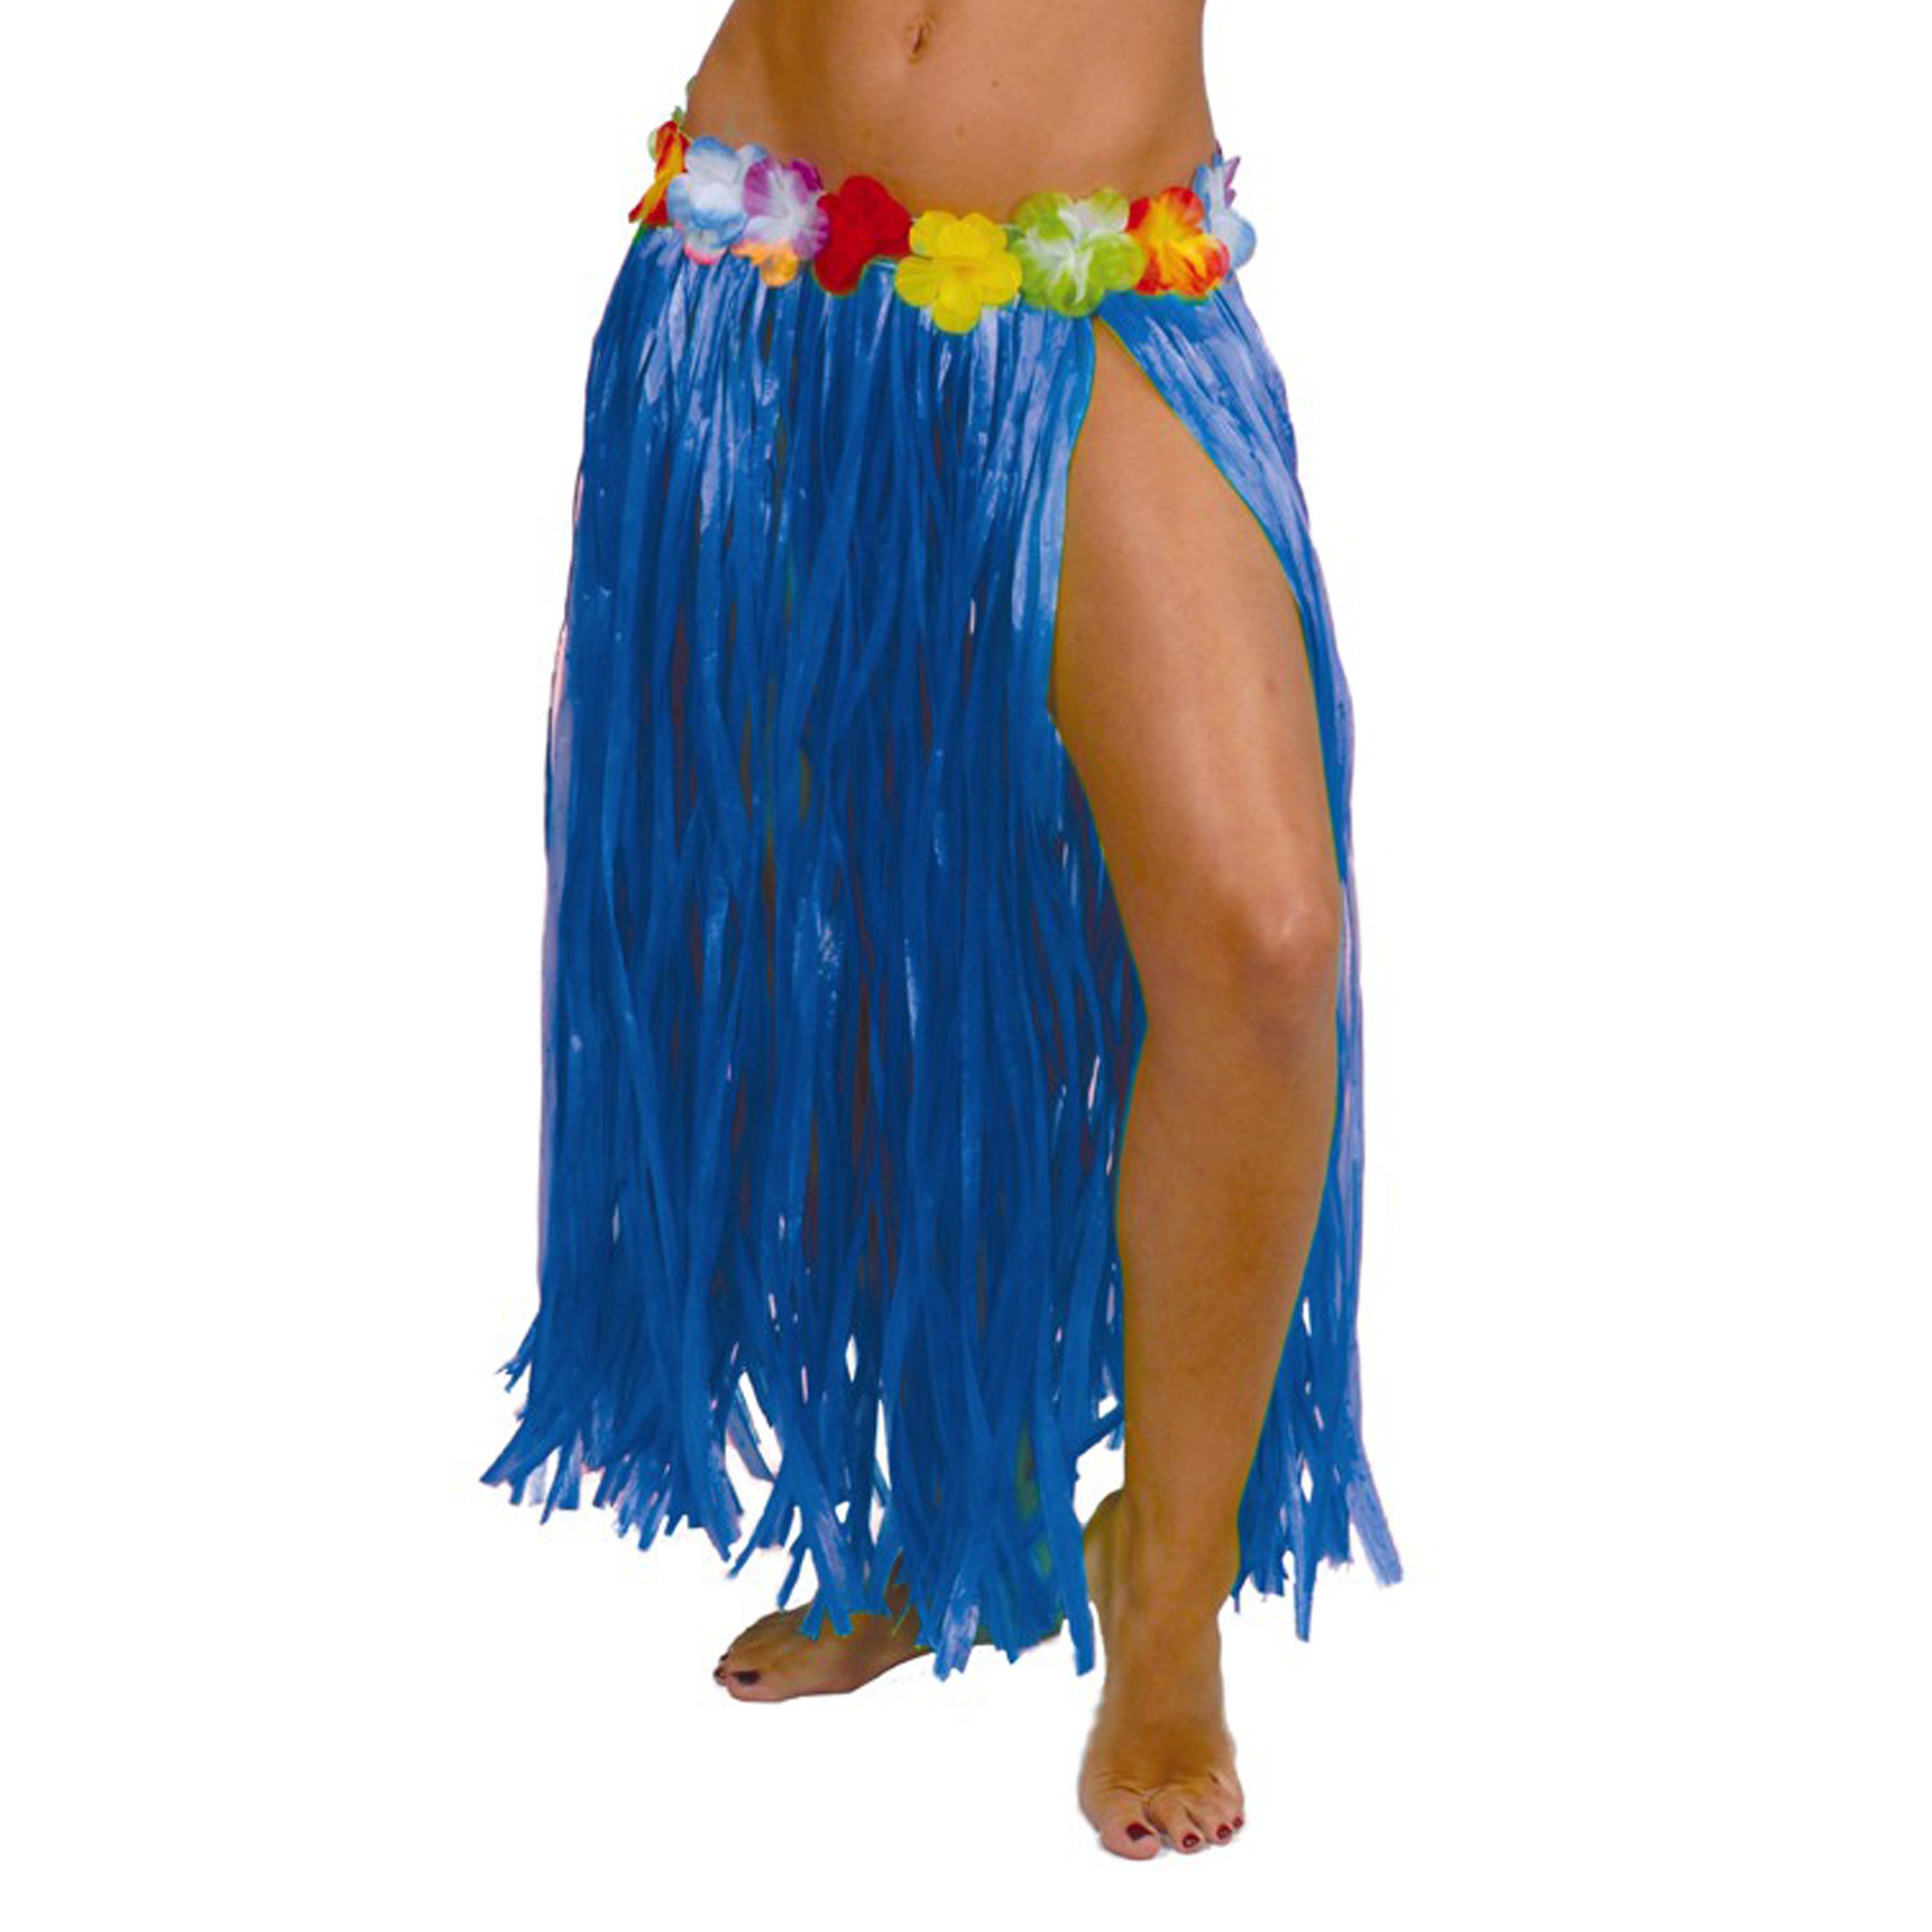 Toppers Hawaii verkleed rokje voor volwassenen blauw 75 cm rieten hoela rokje tropisch